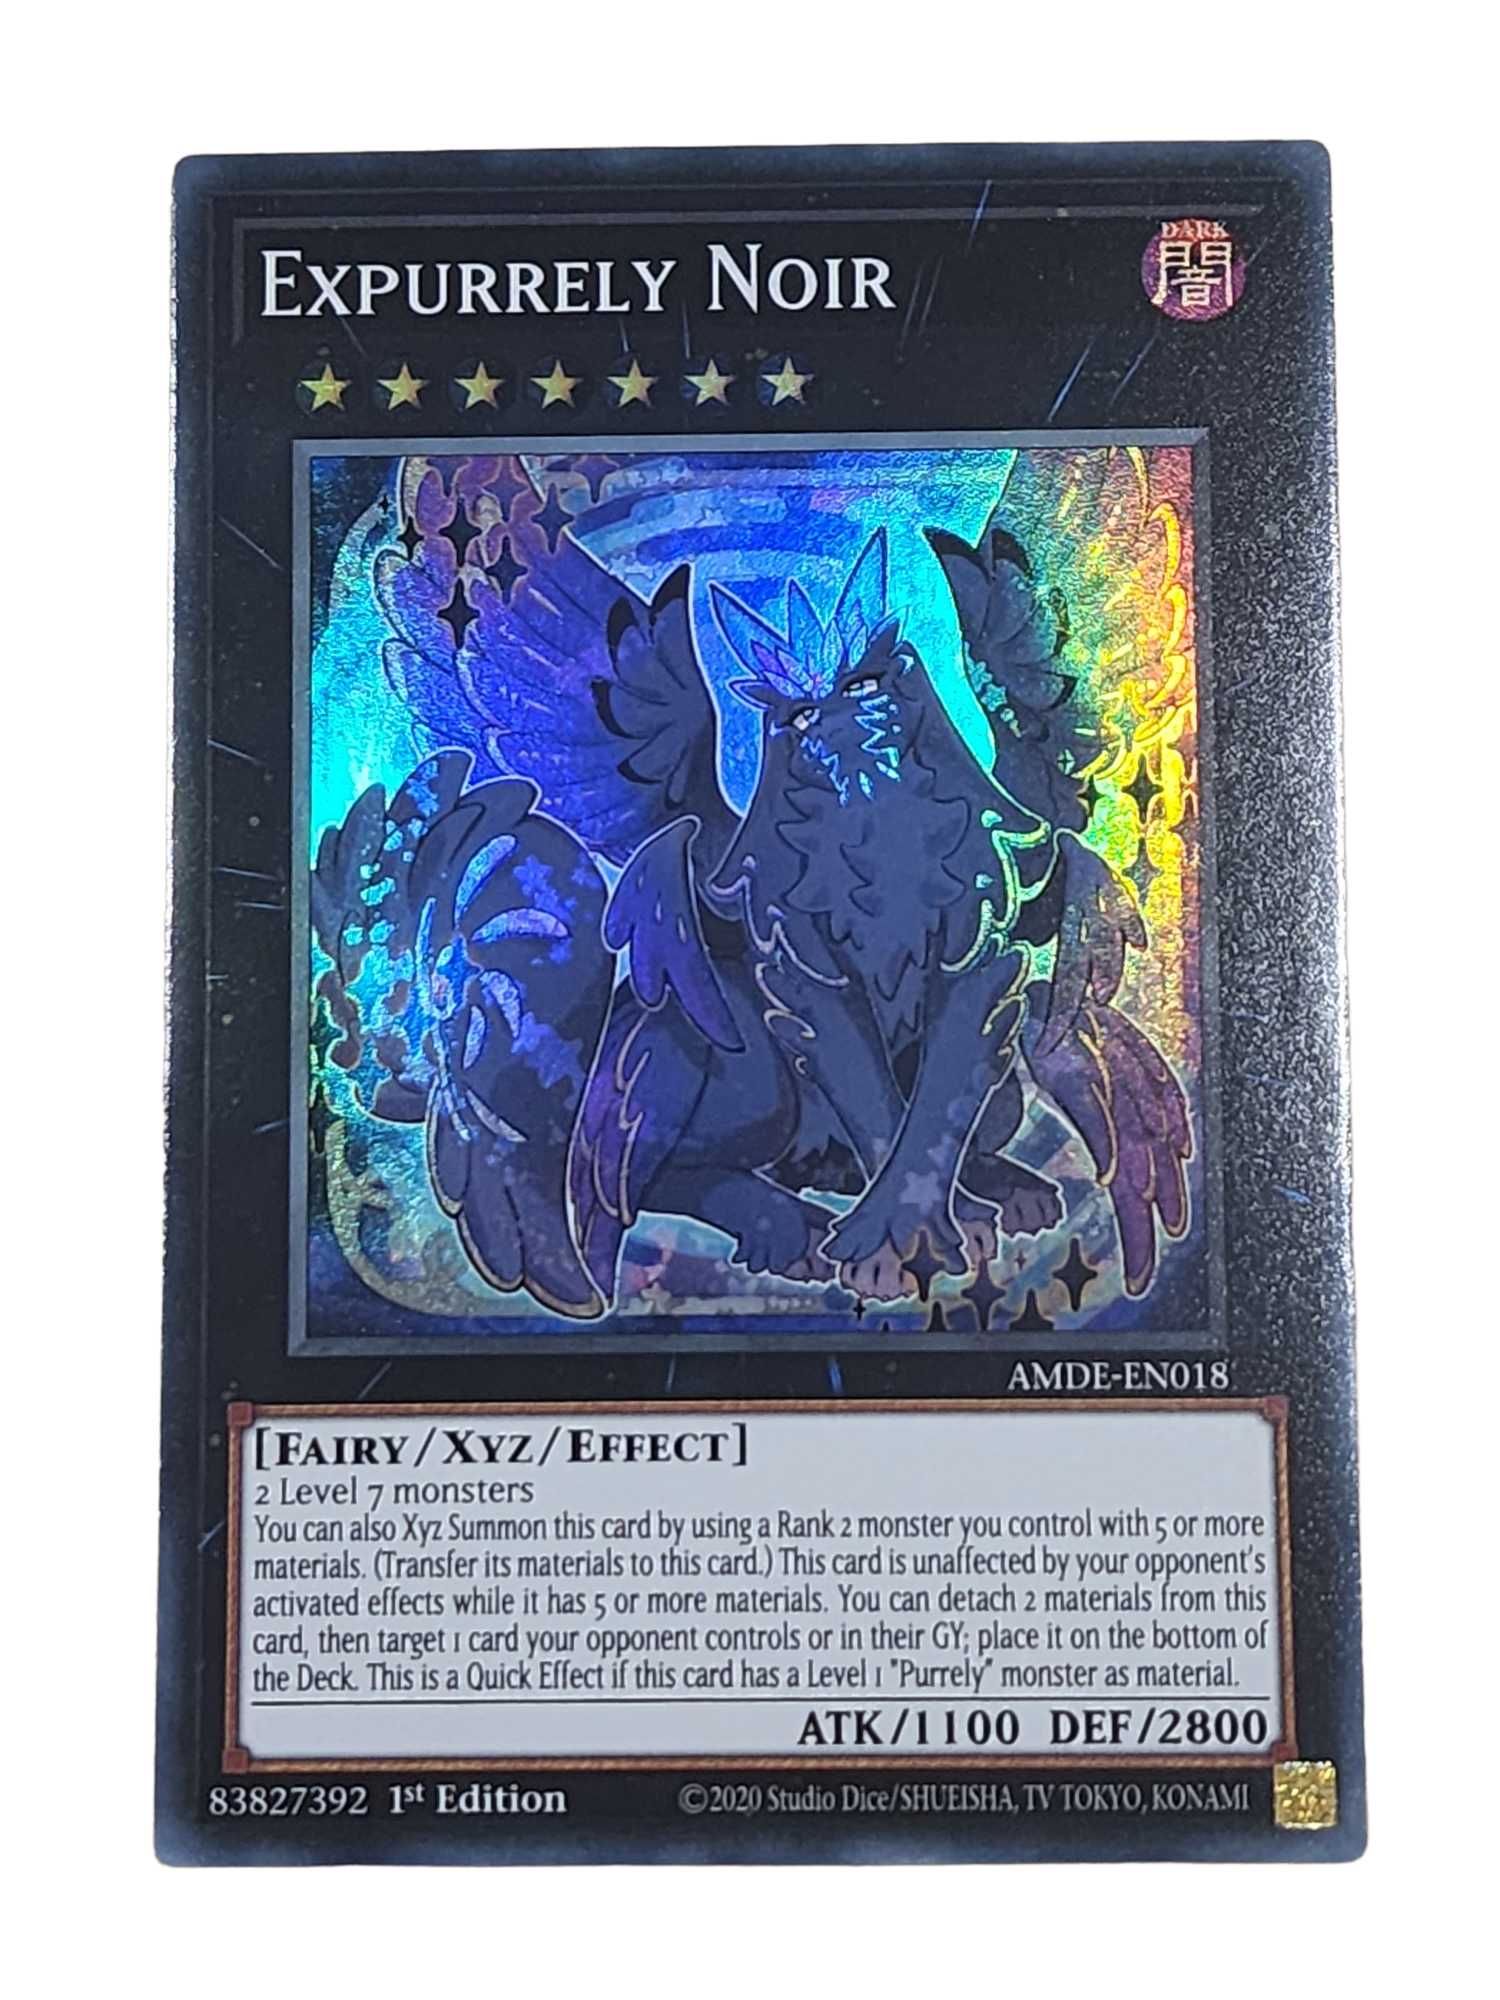 Expurrely Noir - AMDE-EN018 - Super Rare 1st Edition NM Yugioh